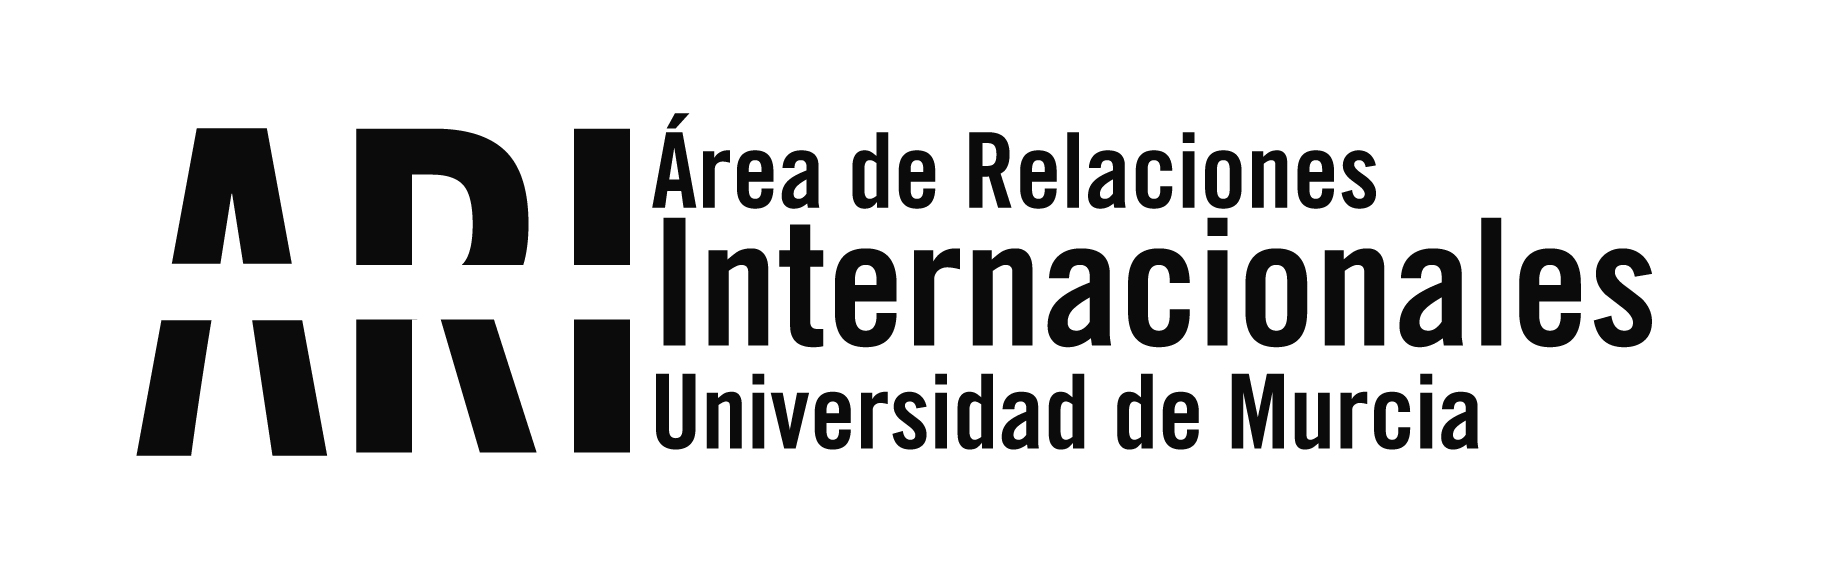 La Universidad de Murcia, nuevo miembro de la red de universidades europeas European University Foundation - Área de Relaciones Internacionales